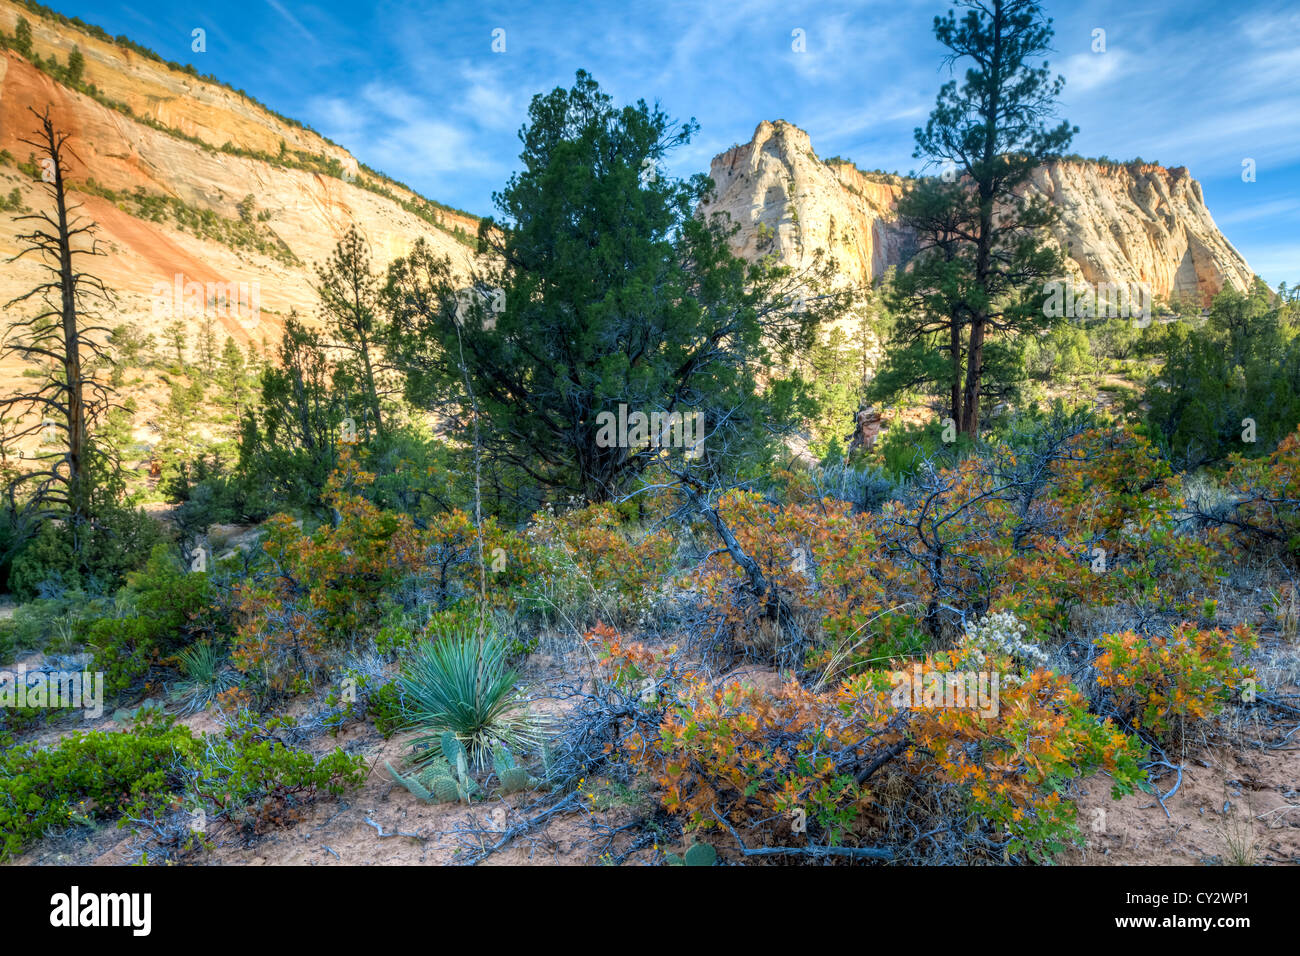 Zion National Park est situé dans le sud-ouest des États-Unis, près de Springdale, en Utah Banque D'Images